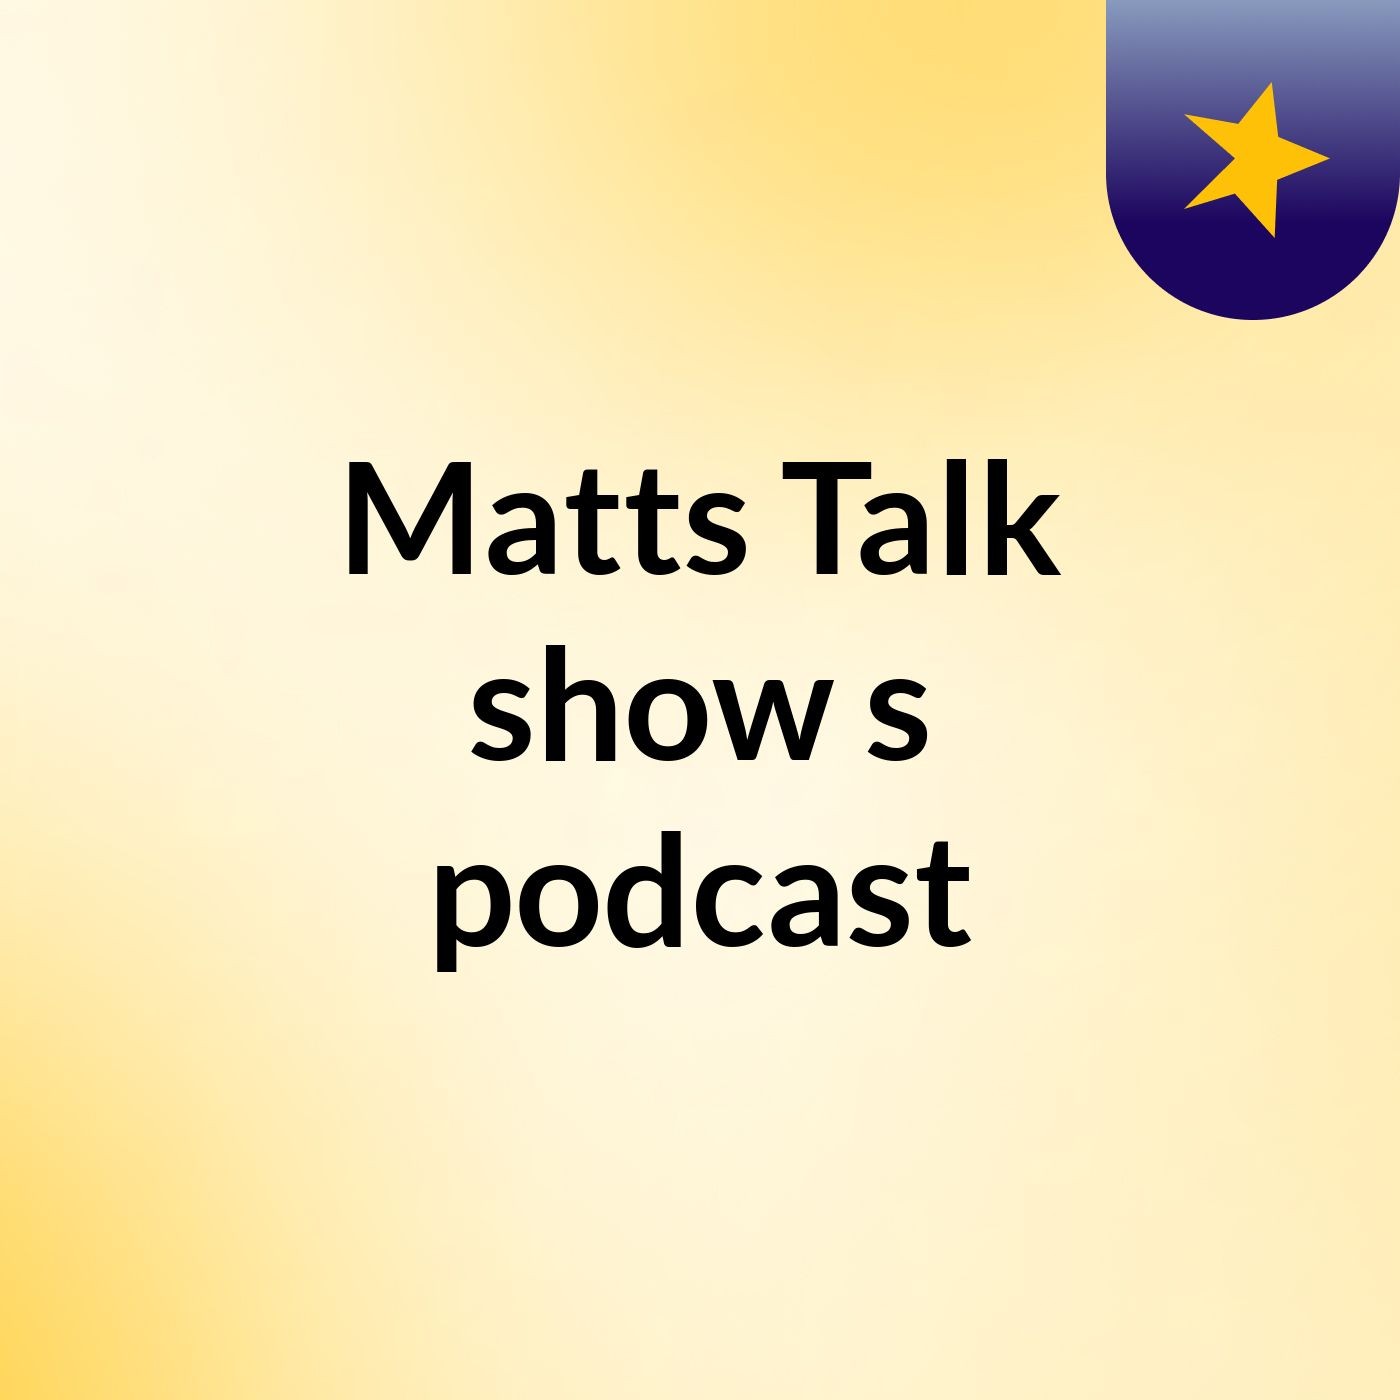 Episode 2 - Matts Talk show's podcast